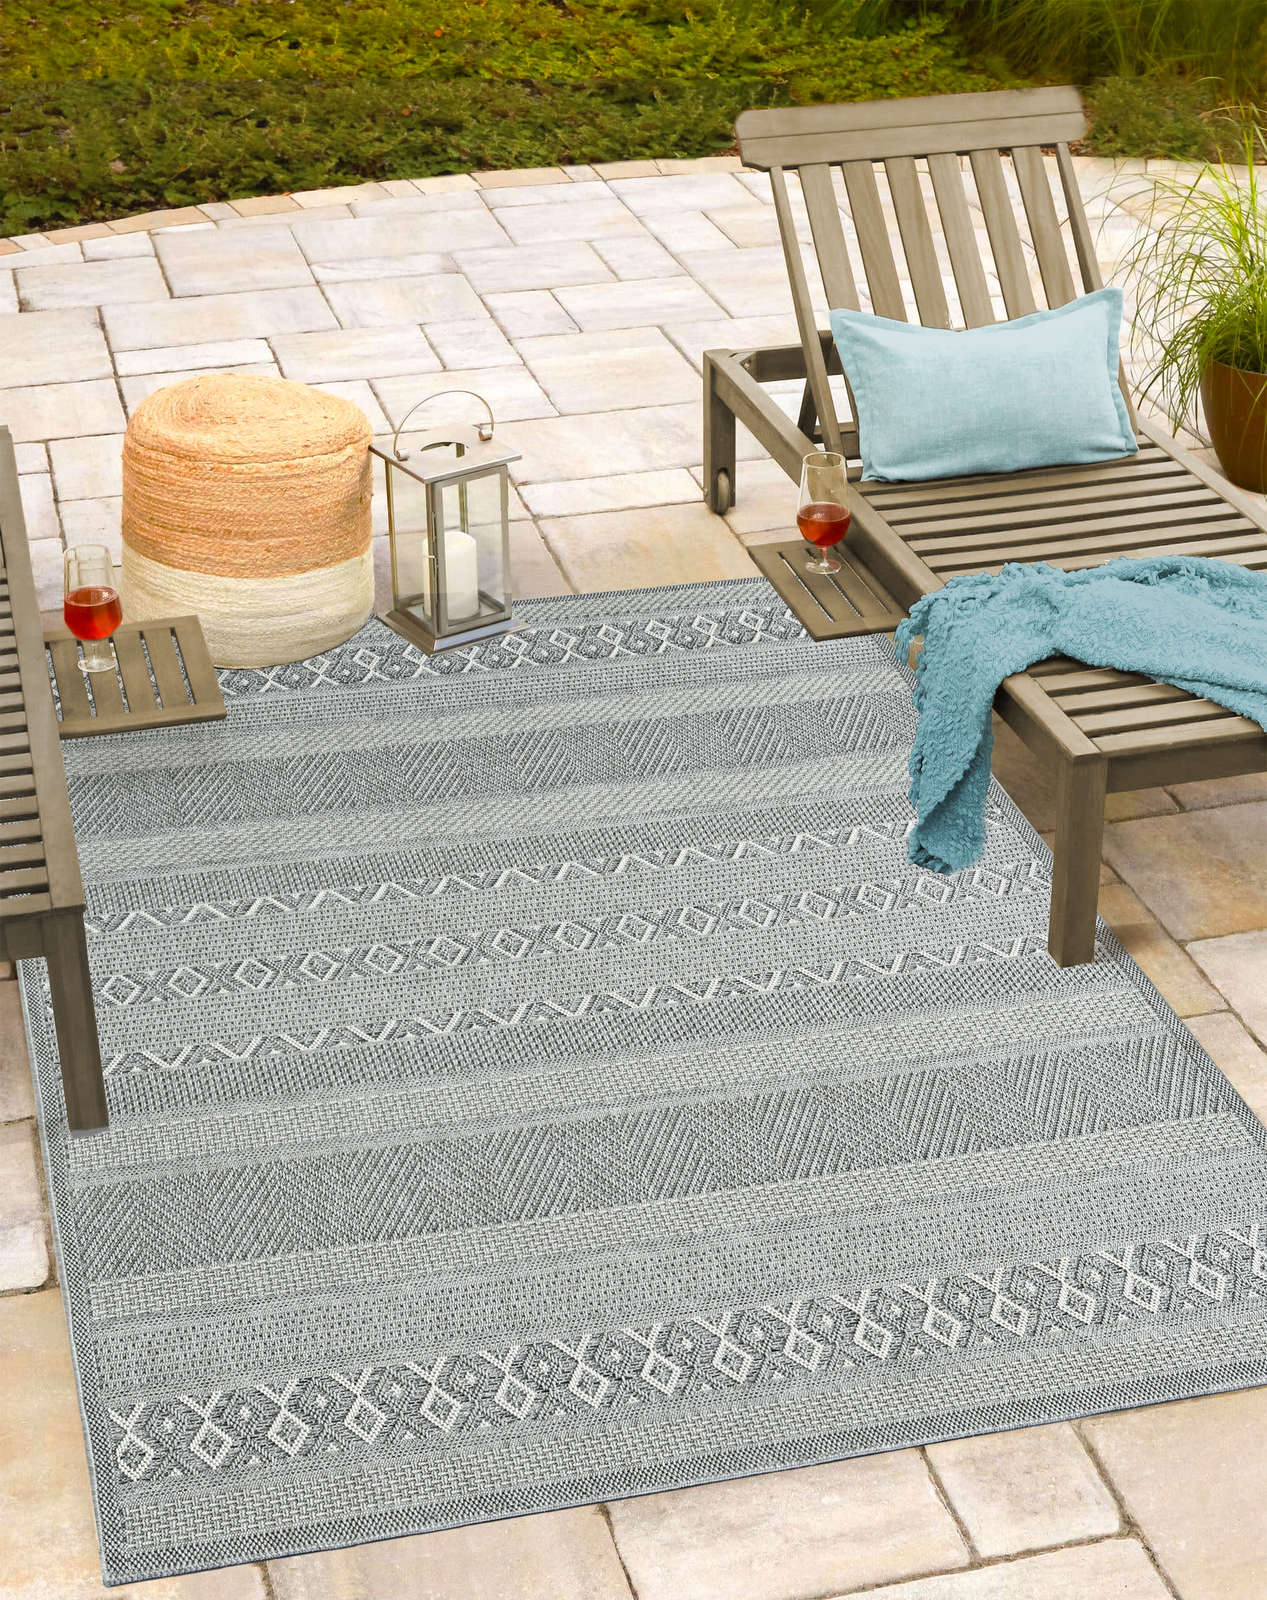             Schlicht Bemusterter Outdoor Teppich in Grau – 220 x 160 cm
        